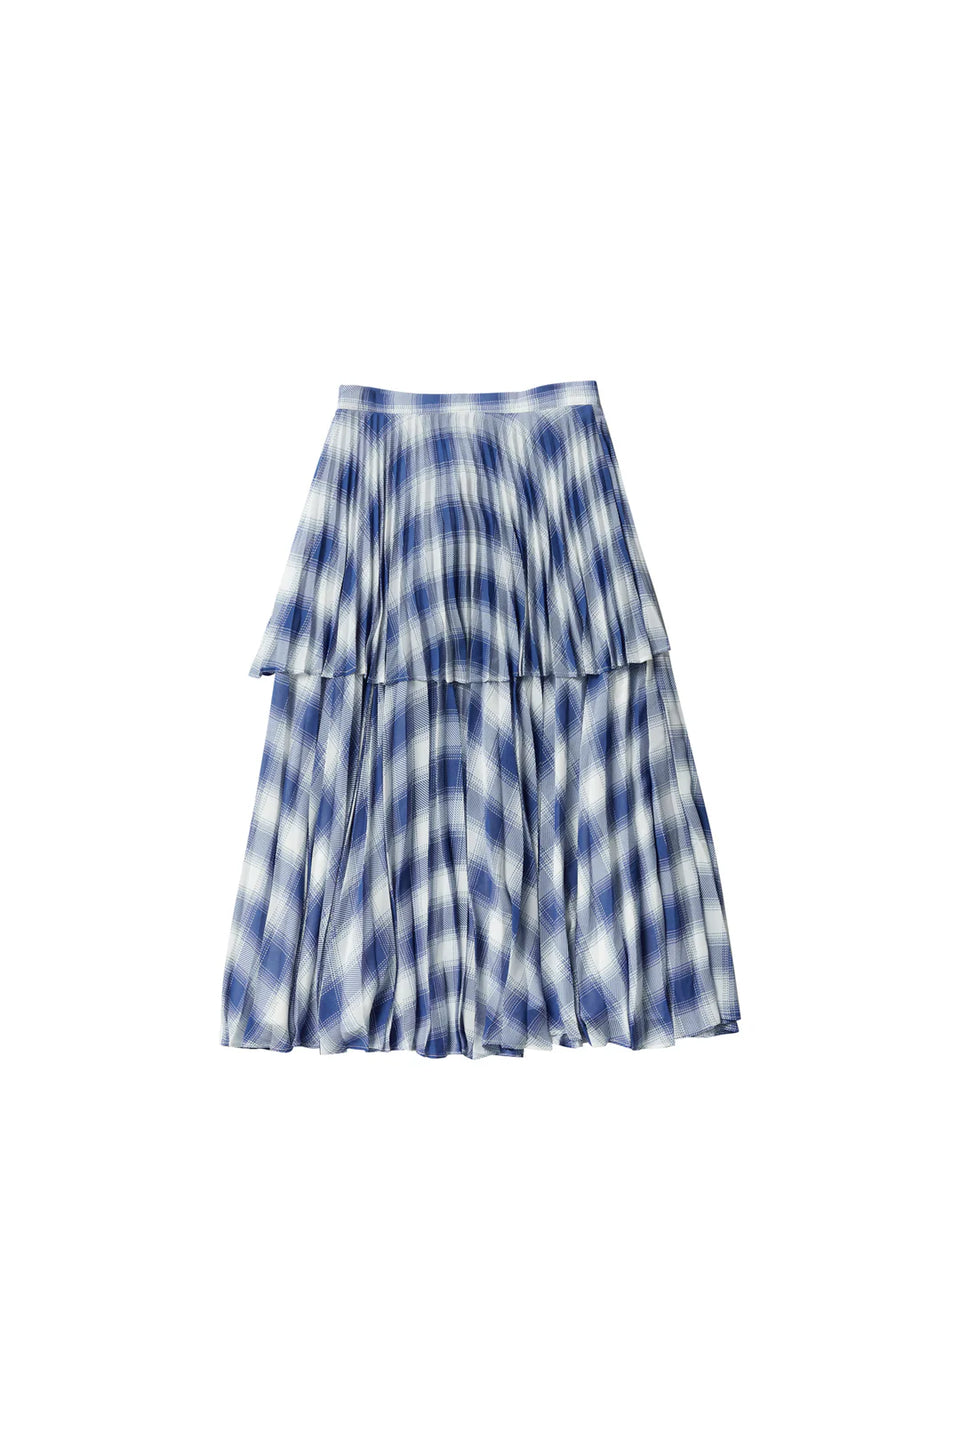 Elle Oh Elle Blue & White Checkered Short Ruffle Skirt